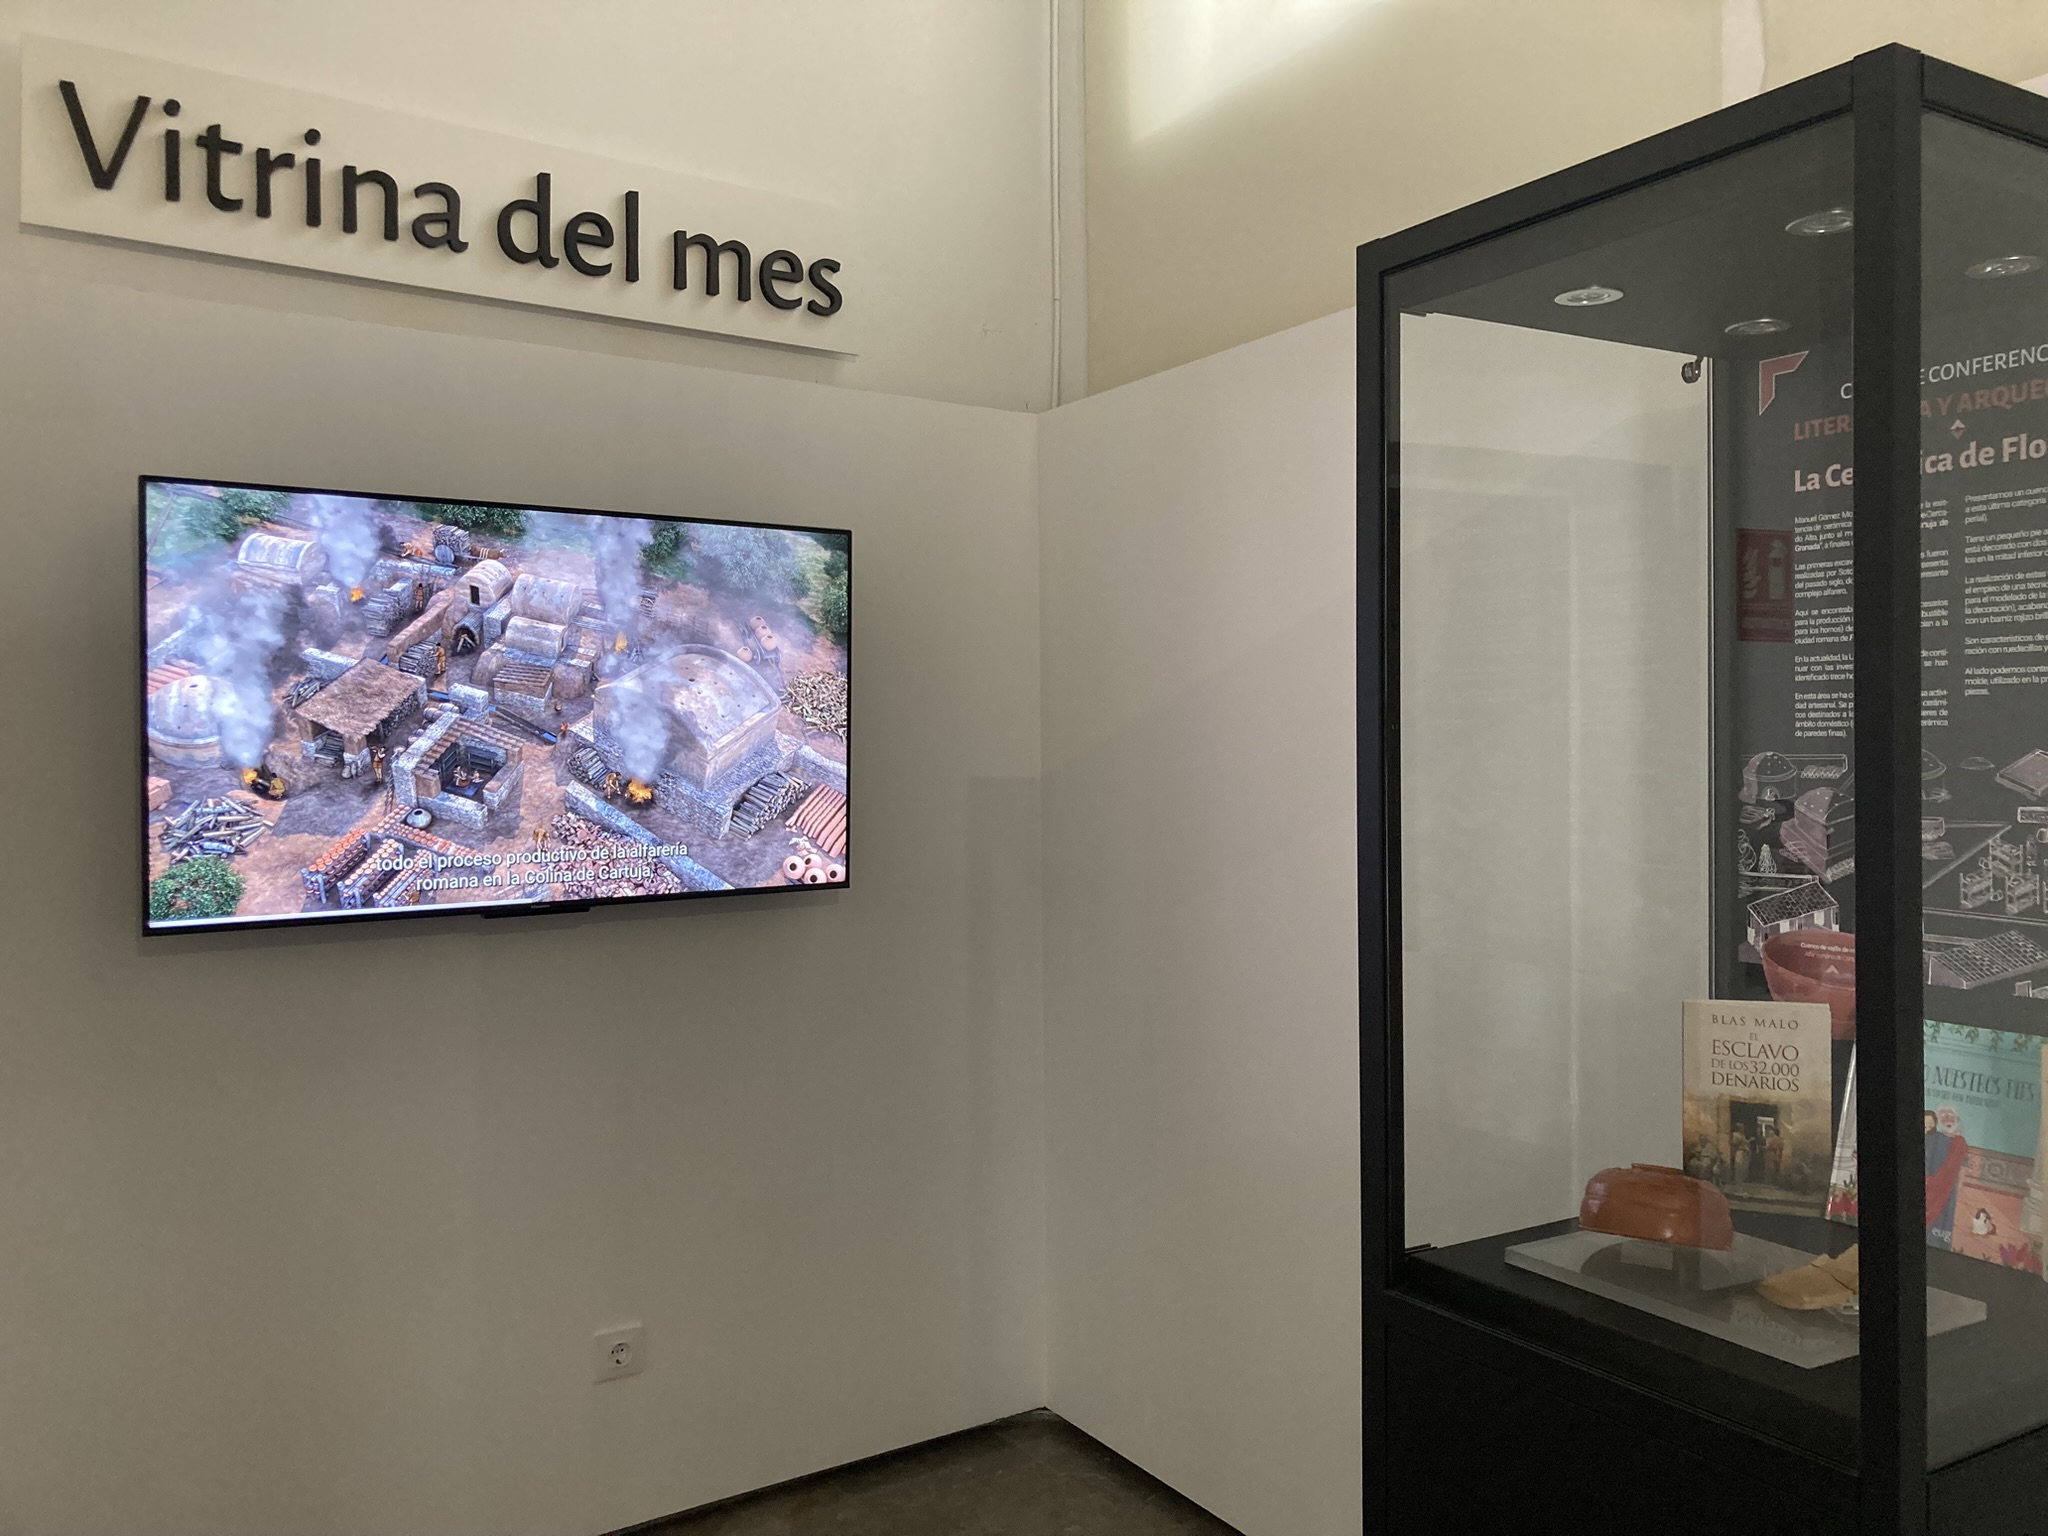 El Alfar romano de Cartuja, Vitrina del Mes del Museo Arqueológico y Etnográfico de Granada